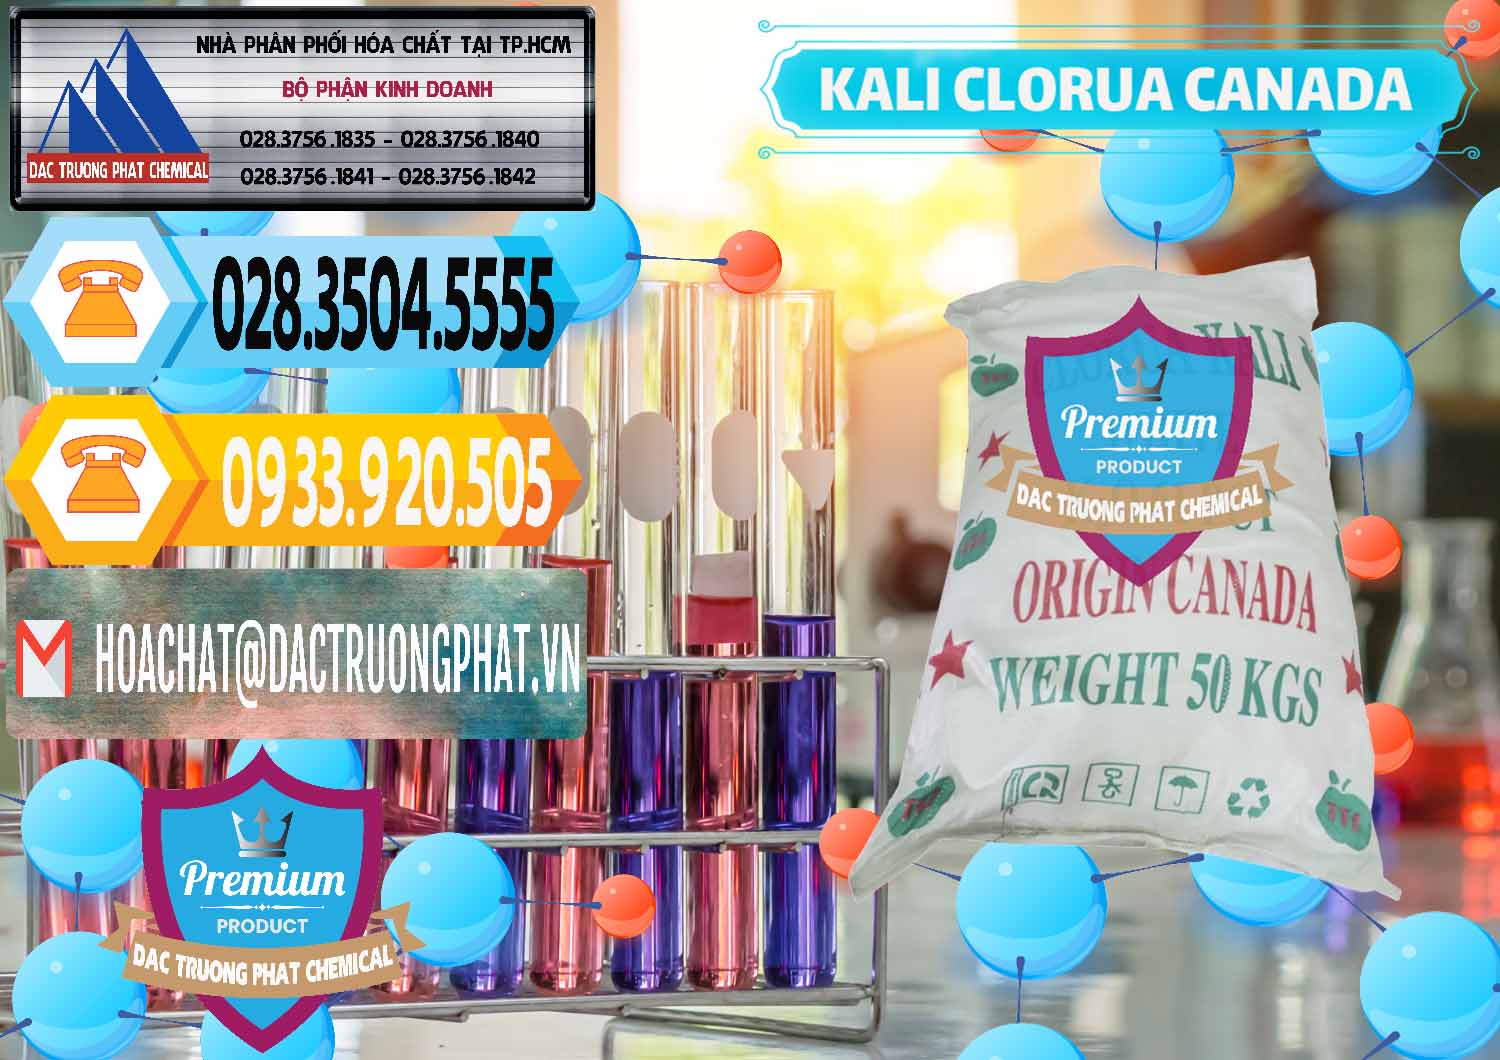 Công ty chuyên kinh doanh - bán KCL – Kali Clorua Trắng Canada - 0437 - Công ty chuyên nhập khẩu - phân phối hóa chất tại TP.HCM - hoachattayrua.net